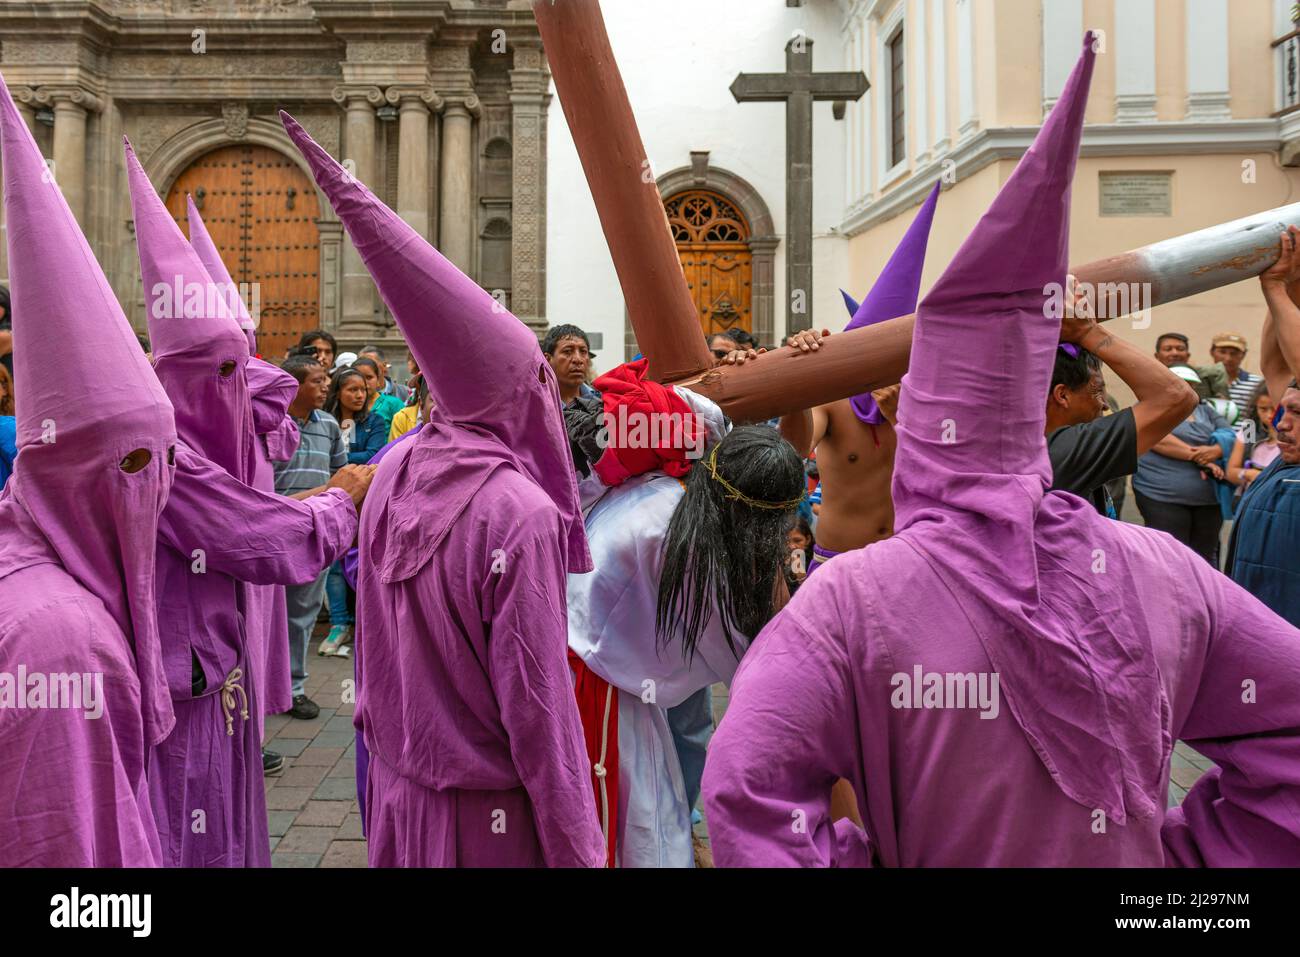 Groupe de pénitents Cucuruchos en costume violet et Jésus Christ portant la croix pendant la procession de Pâques du Vendredi Saint dans les rues de Quito, Equateur Banque D'Images